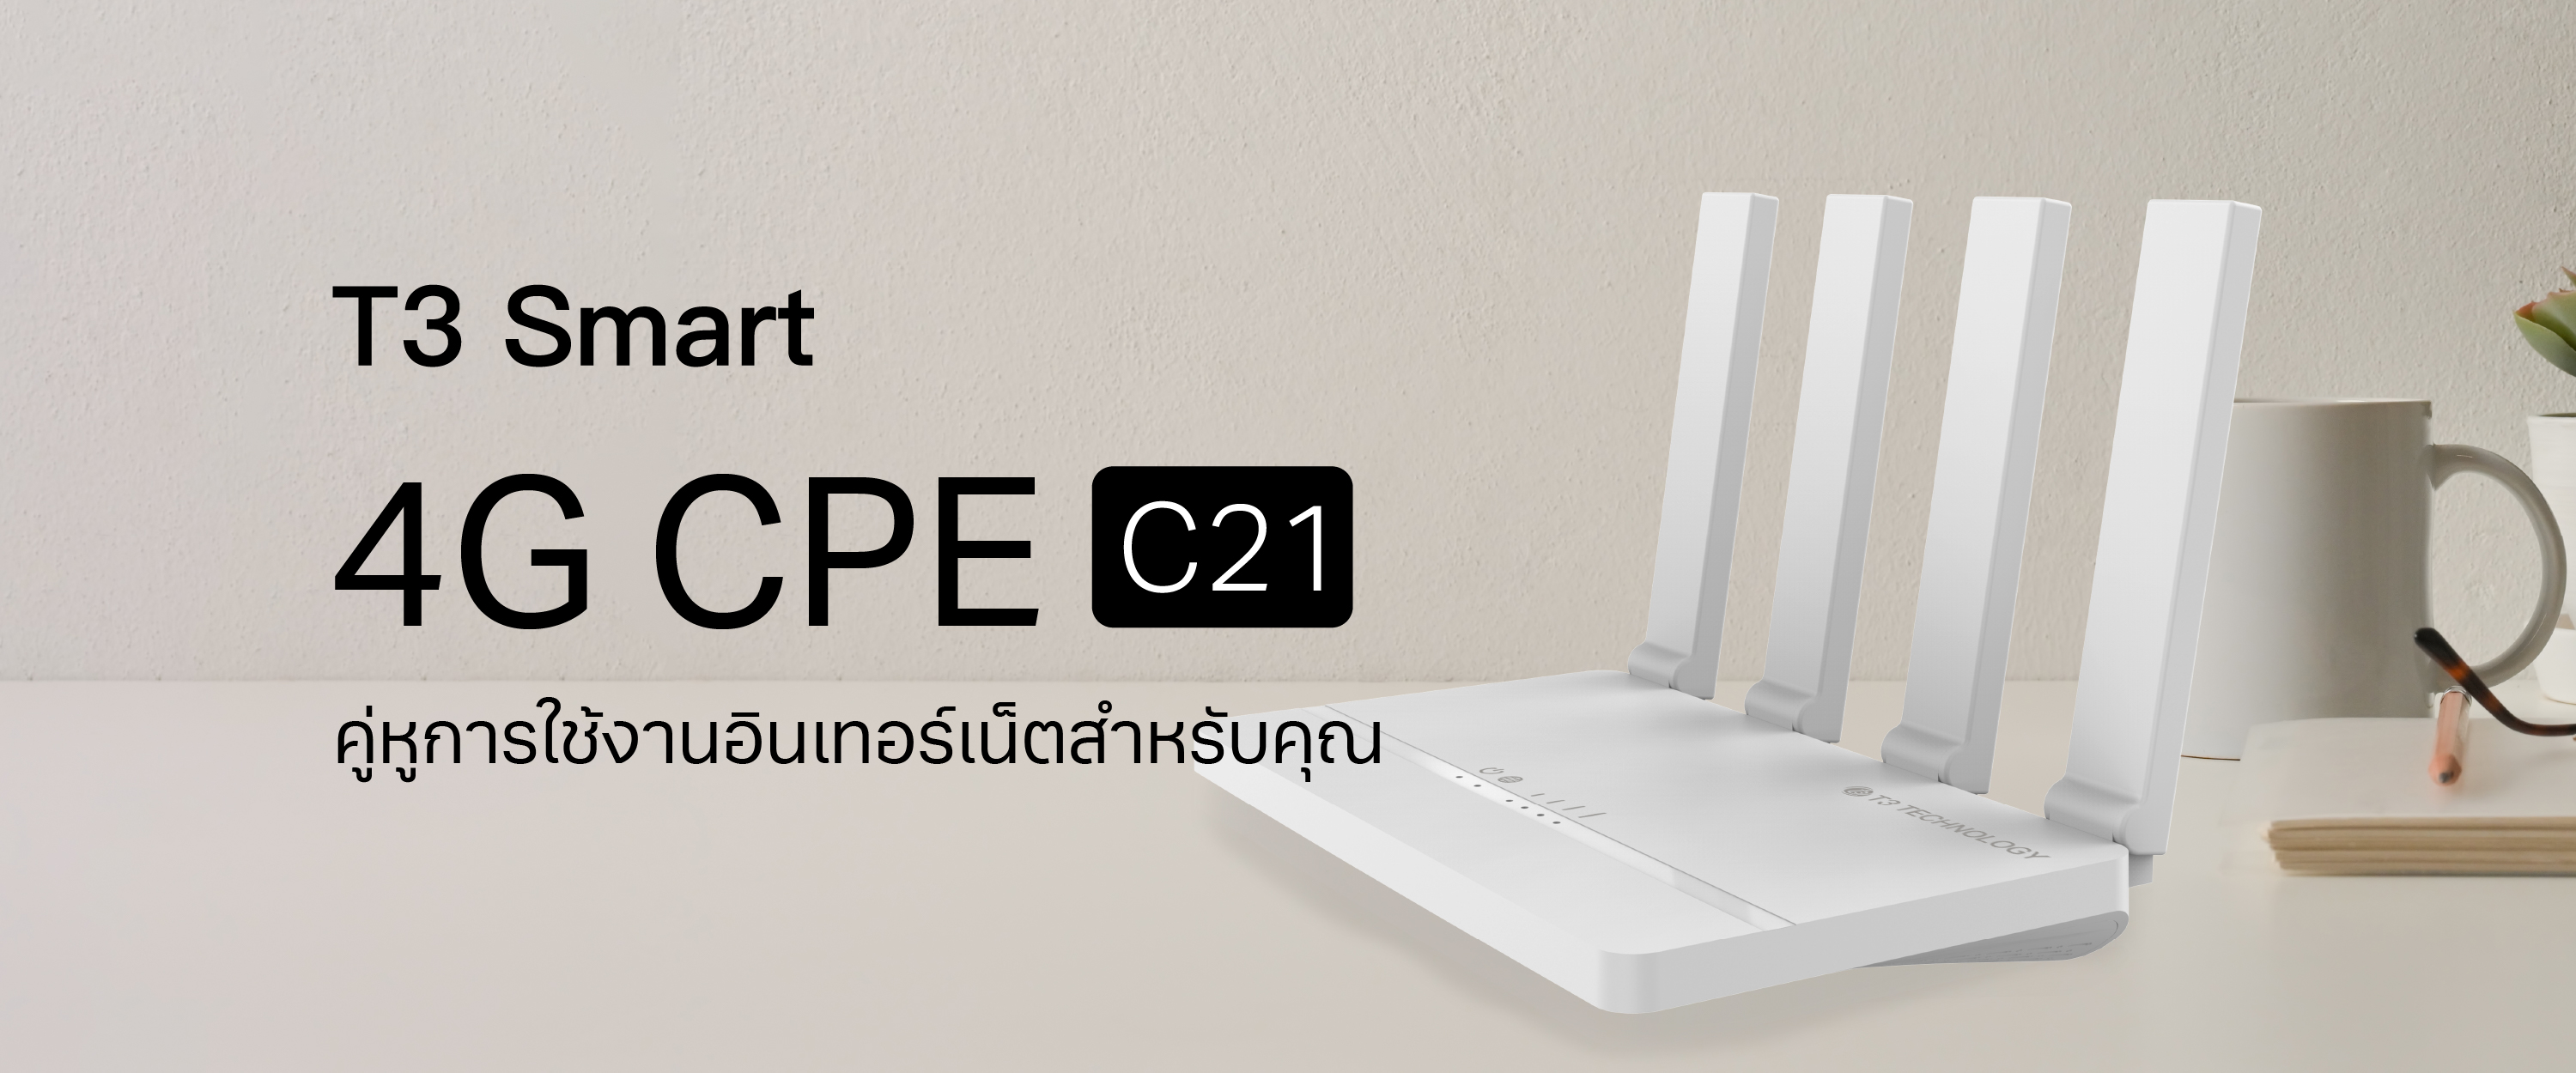 T3 Smart 4G CPE C21 TH